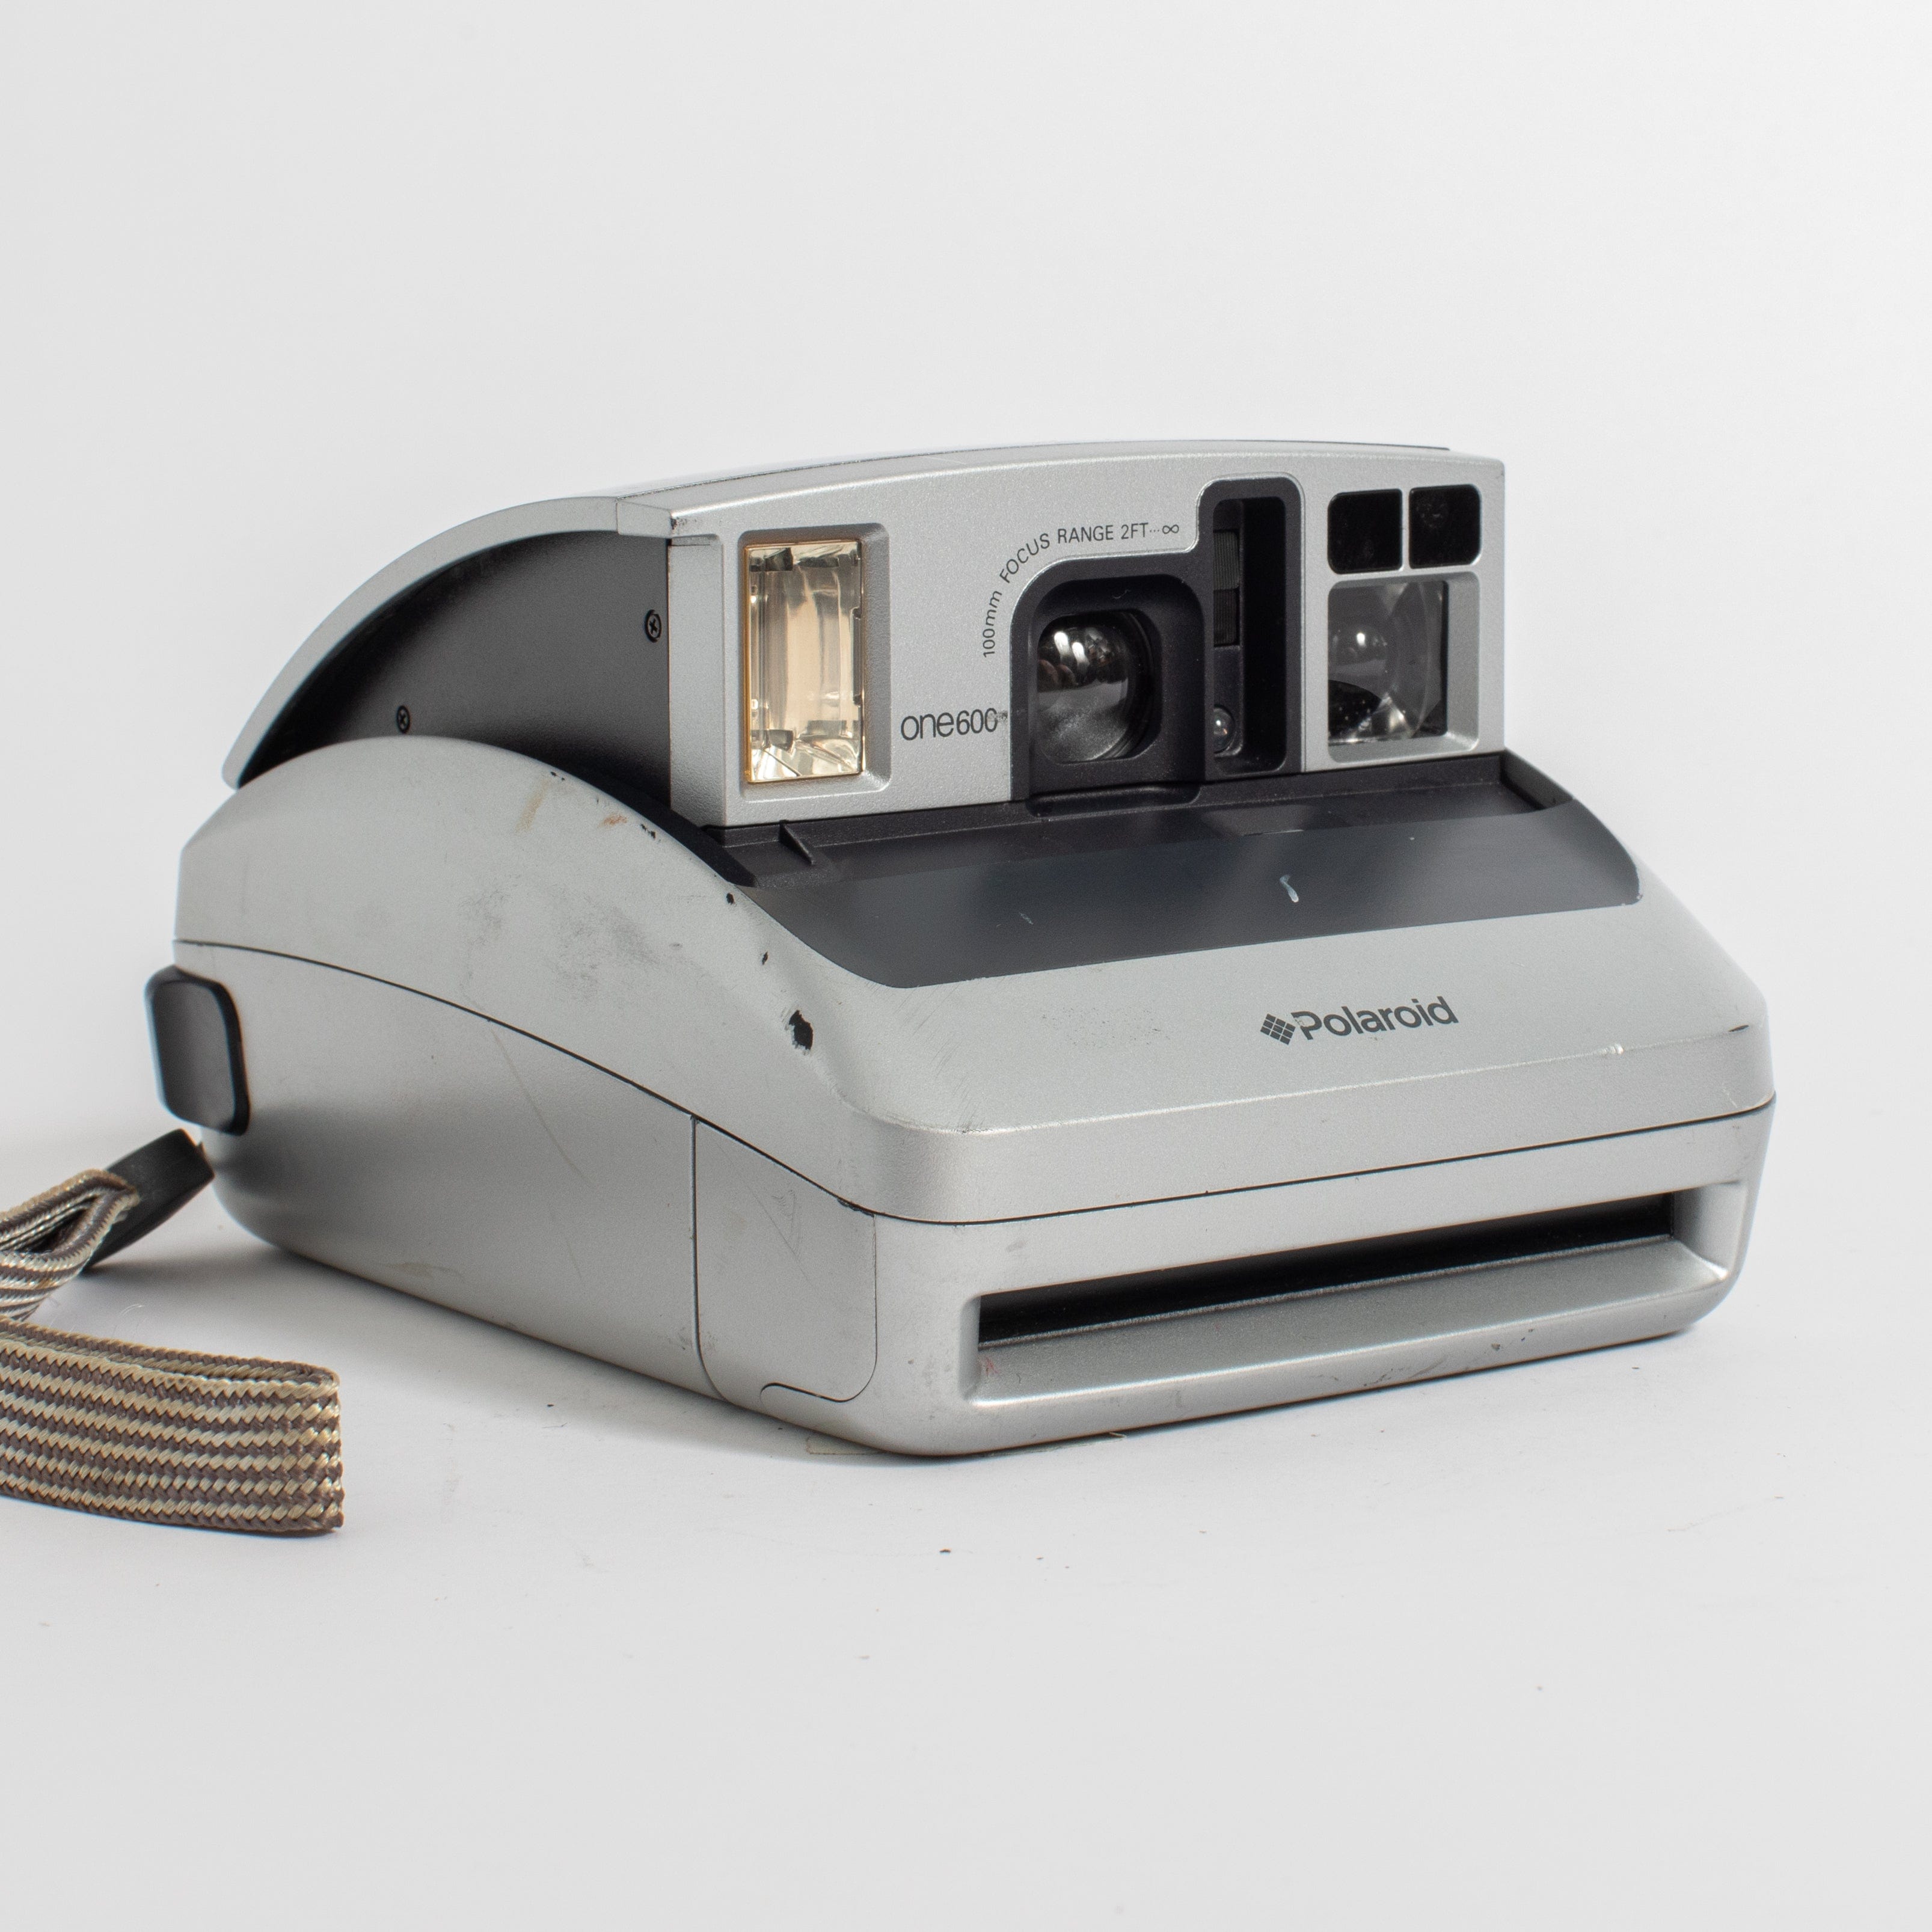 Polaroid One600 – Film Supply Club